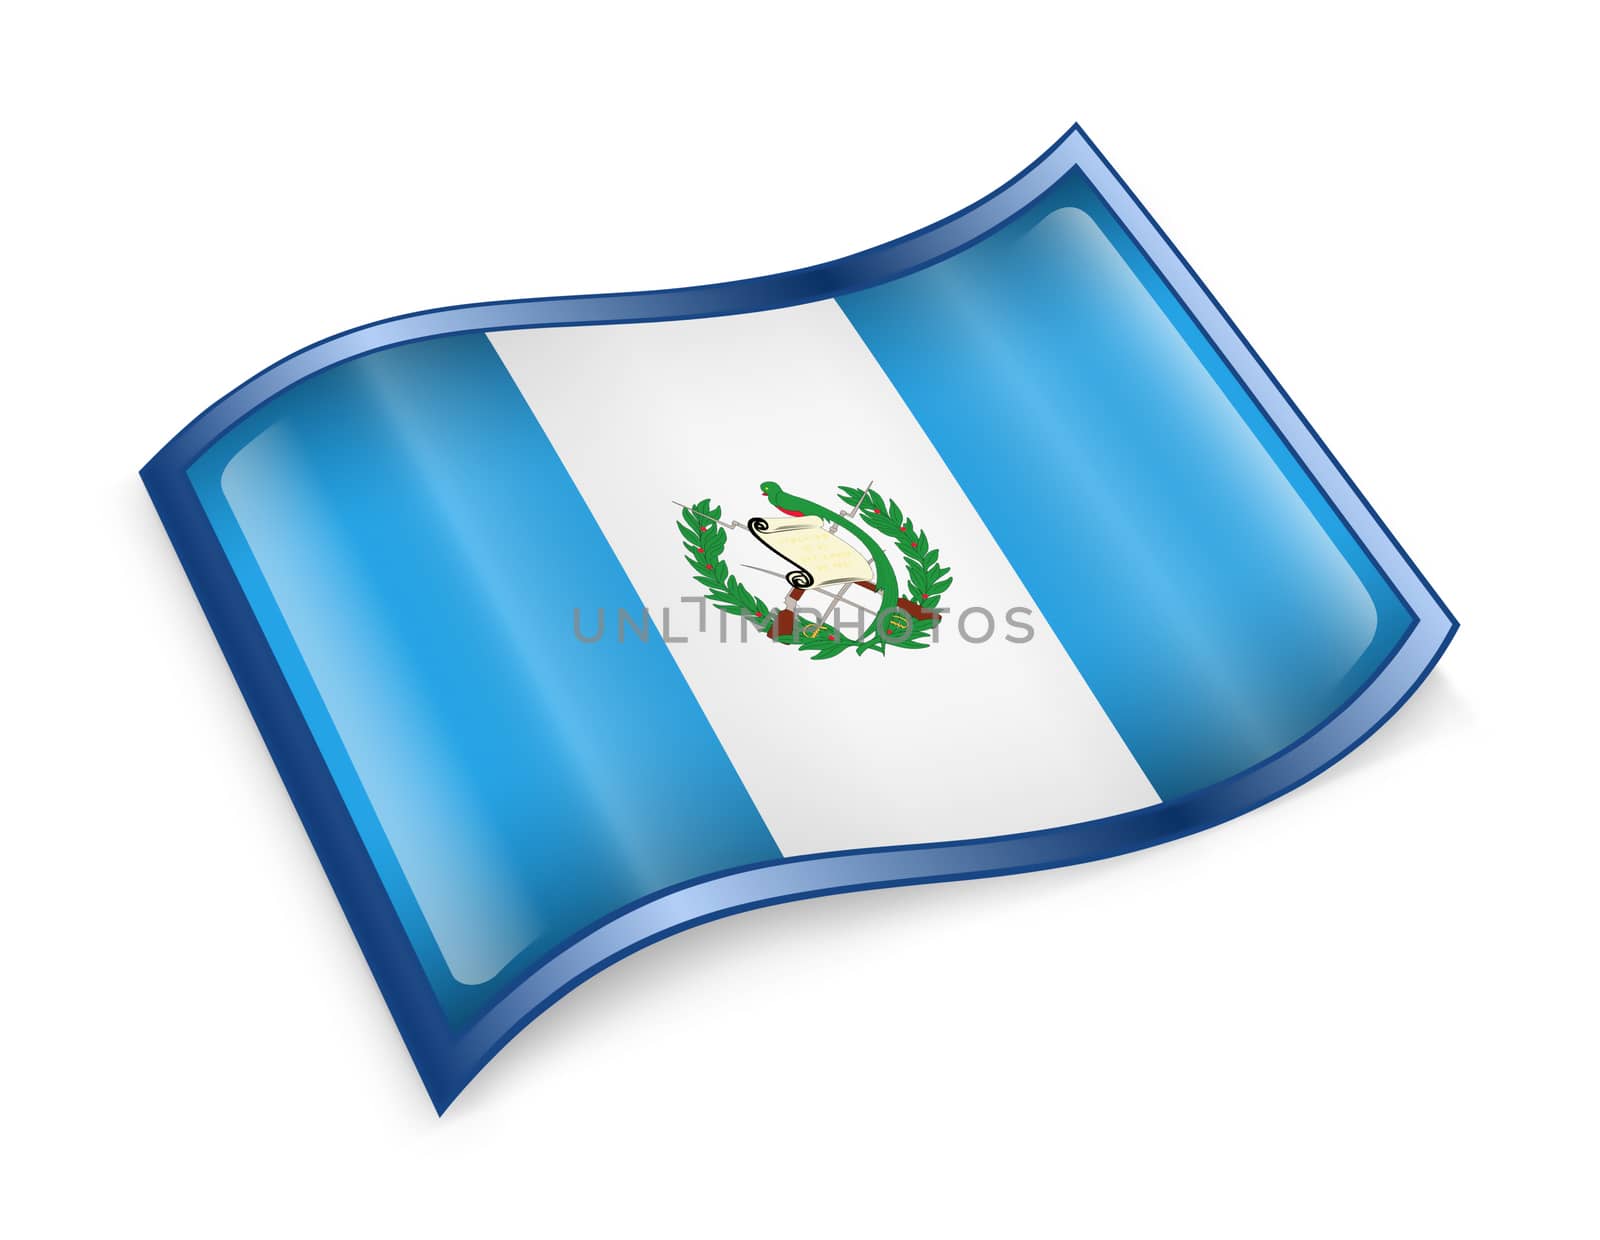 Guatemala Flag icon, isolated on white background.